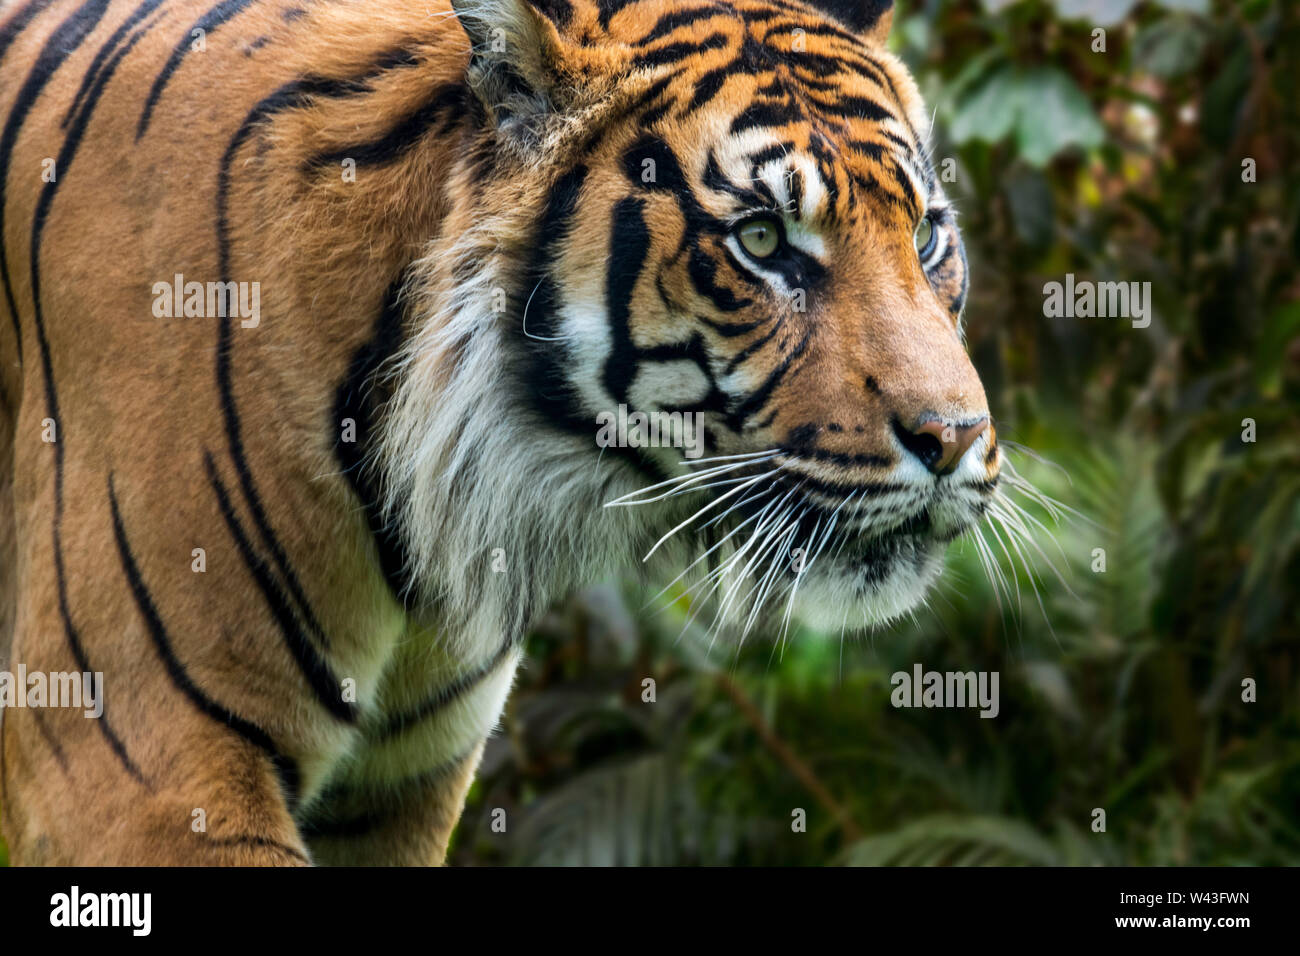 La tigre di Sumatra (Panthera tigris sondaica) nella foresta tropicale, nativo dell'isola indonesiana di Sumatra, Indonesia Foto Stock